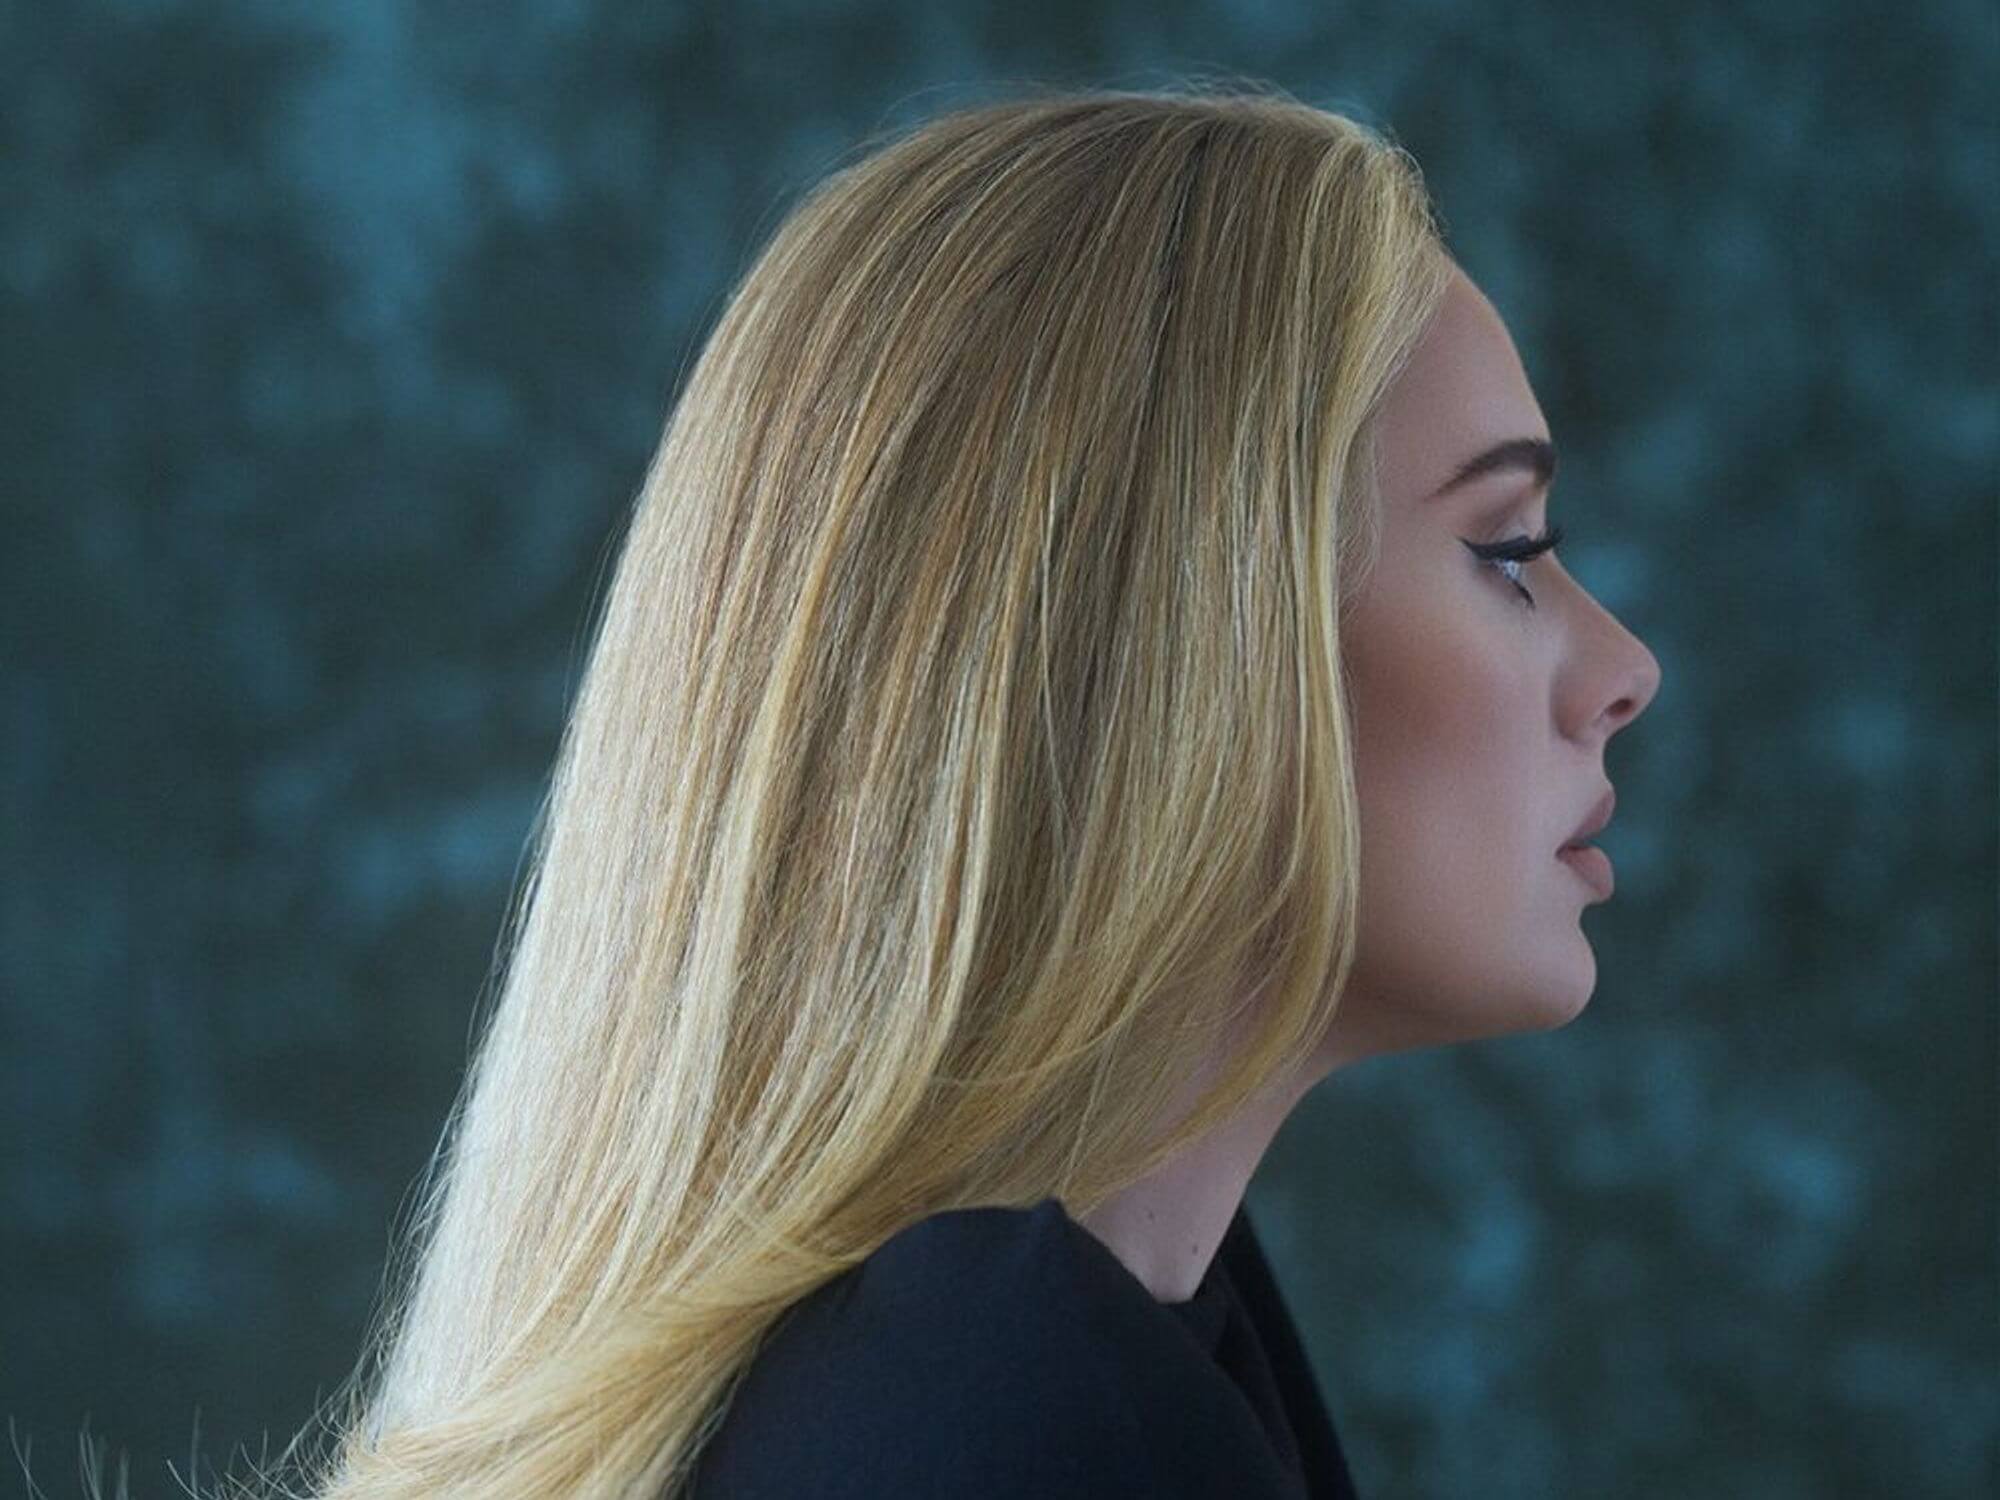 Adele 30 Album Cover